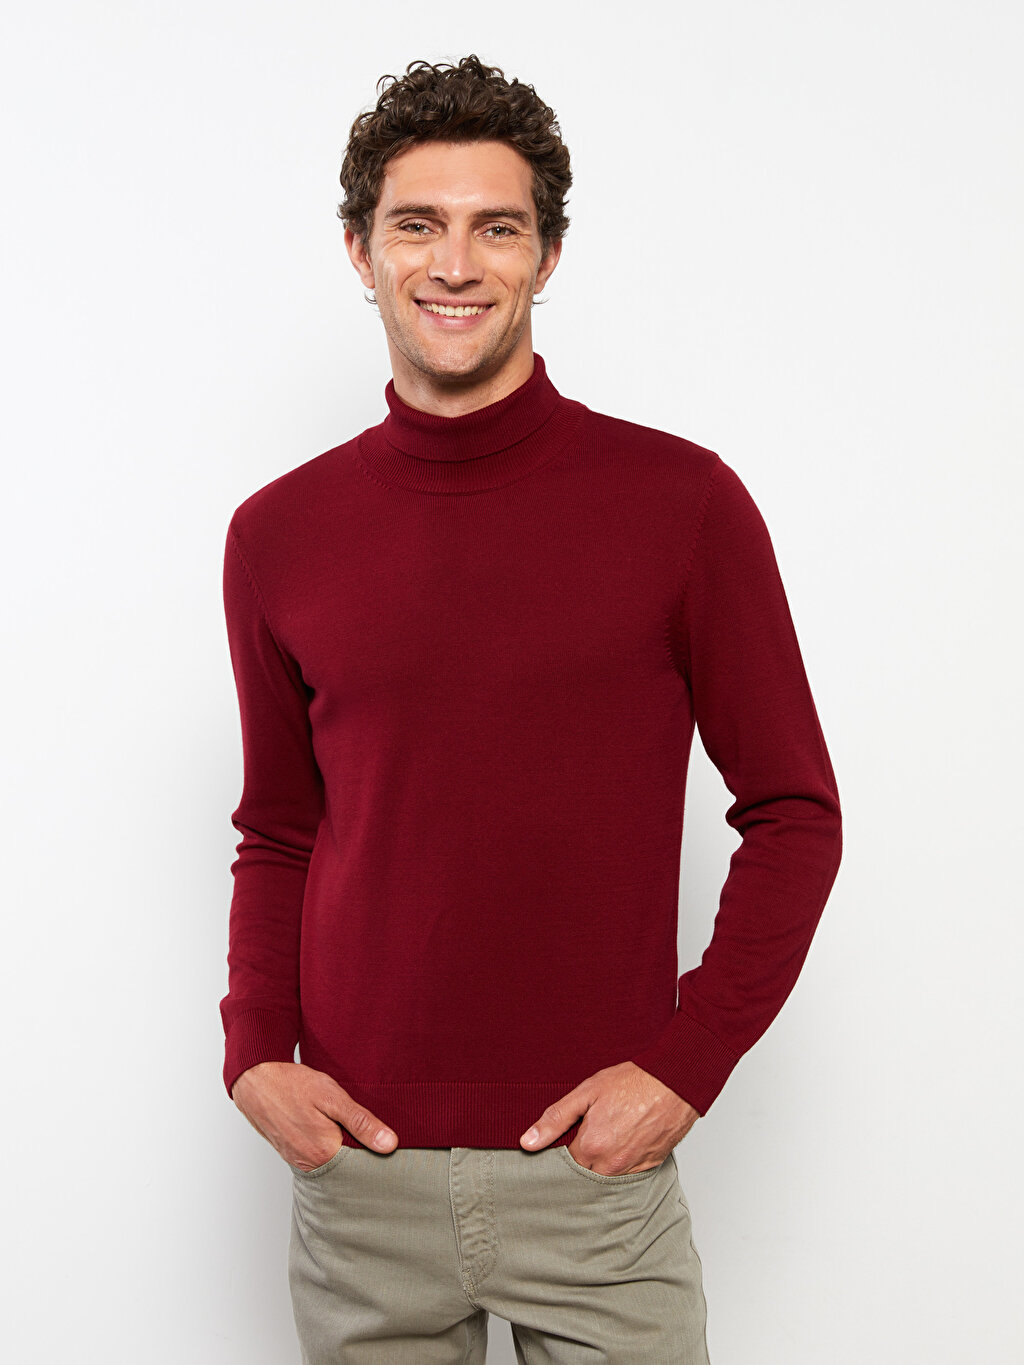 Turtleneck Long Sleeve Men's Knitwear Sweater -W20704Z8-DNF - W20704Z8 ...